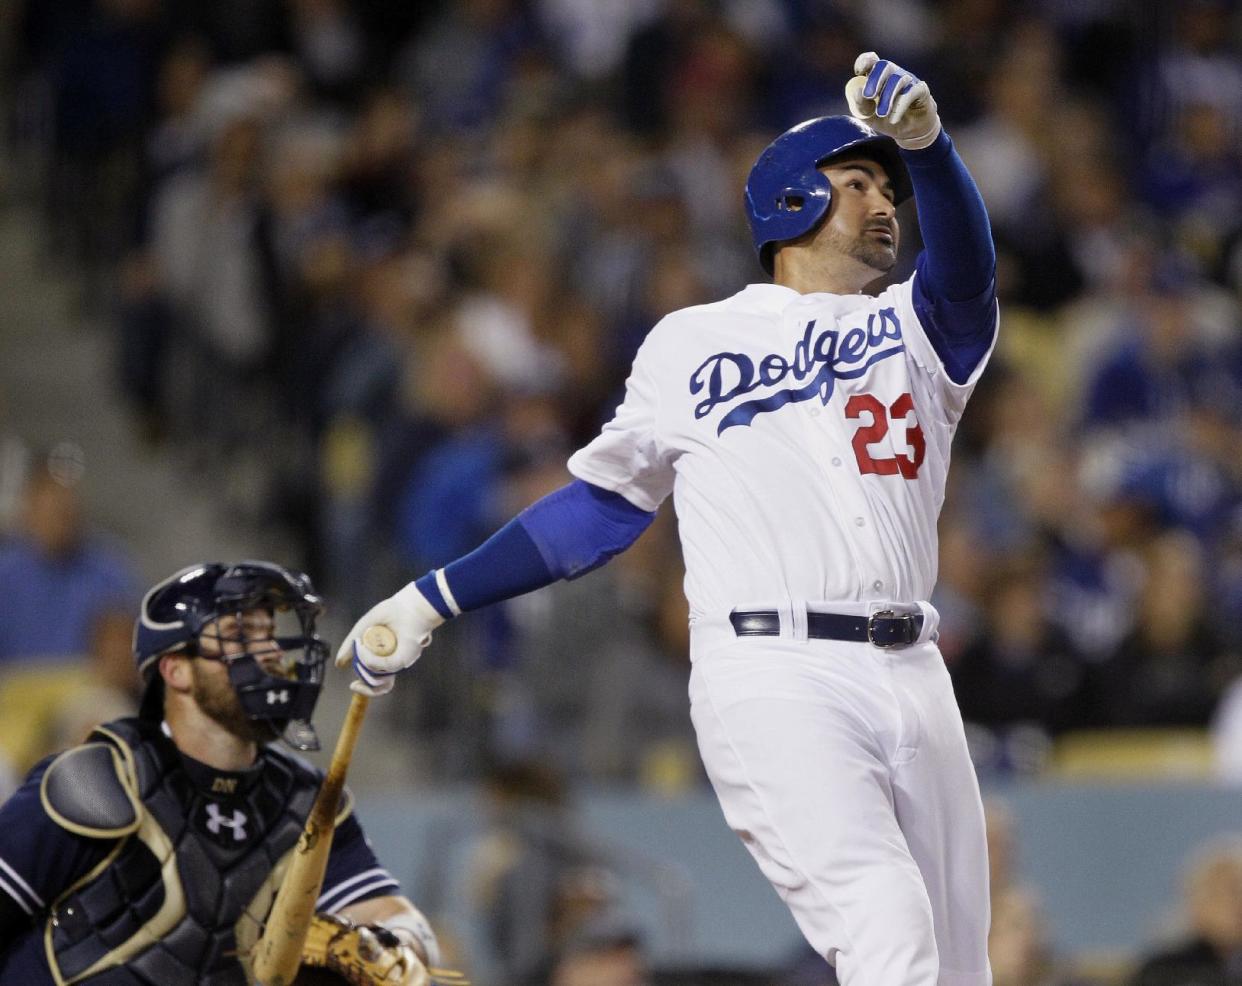 El pelotero de los Dodgers de Los Ángeles Adrián González tras pegar un jonrón solitario, junto al catcher de los Padres de San Diego Derek Norris en el quinto inning de su juego de beisbol en Los Ángeles, el 8 de abril de 2015. (AP Foto/Alex Gallardo)